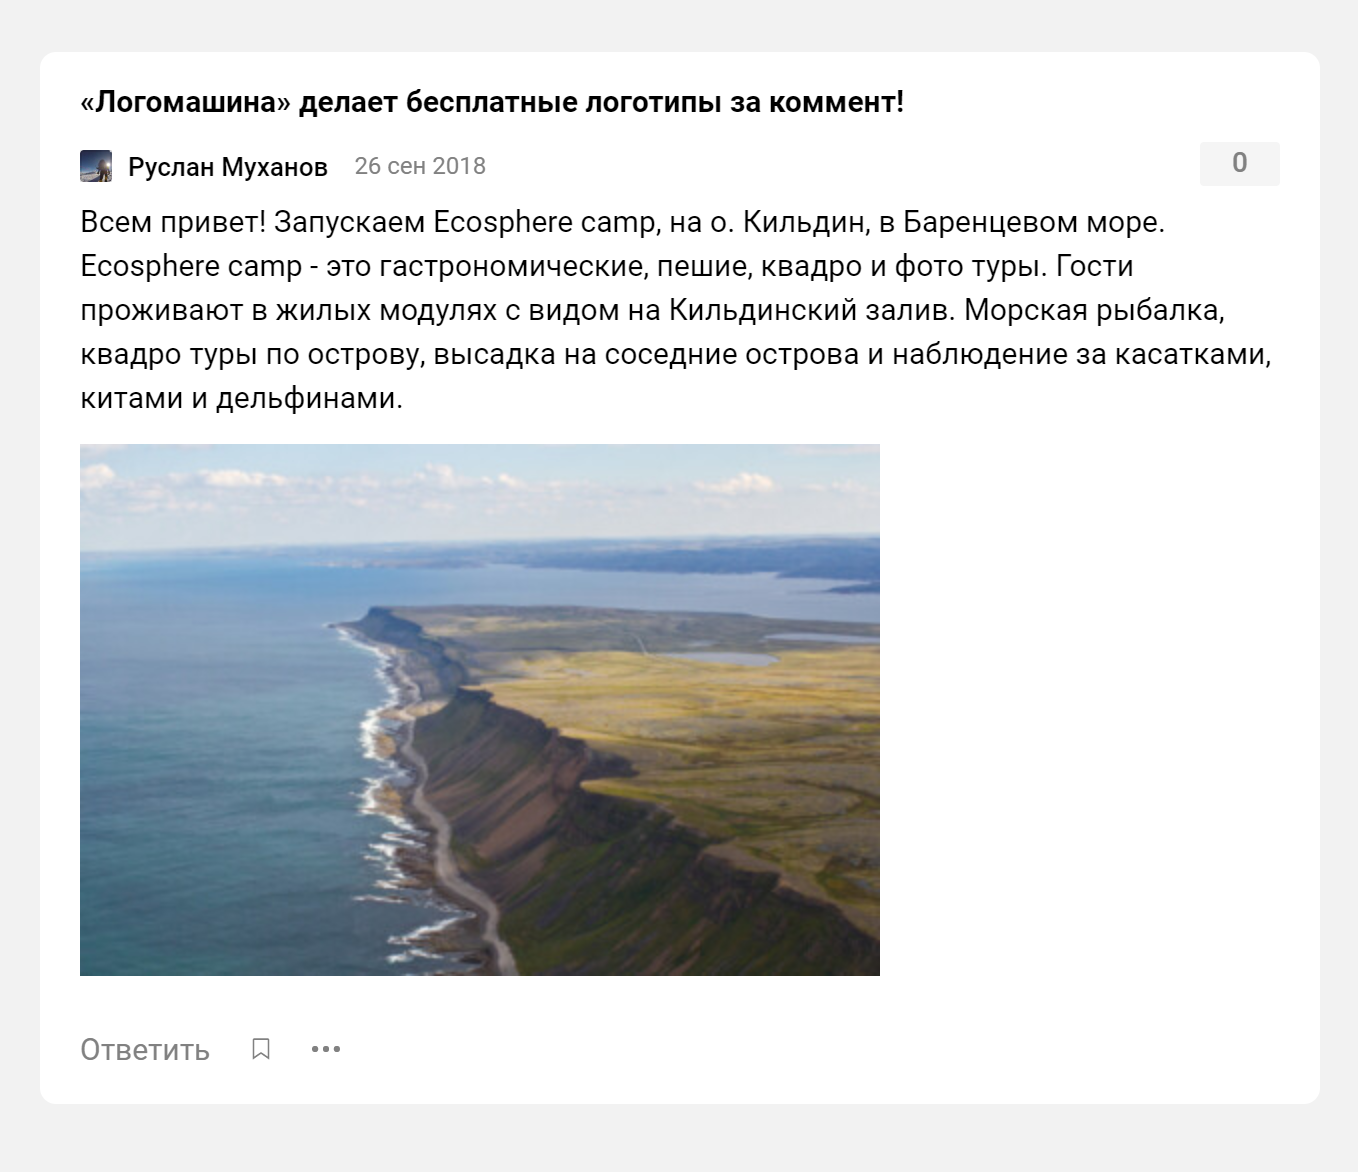 Объявление Руслана Муханова о запуске проекта Ecosphere на острове Кильдин в 2018 году. Это вся информация о проекте, которую я нашел